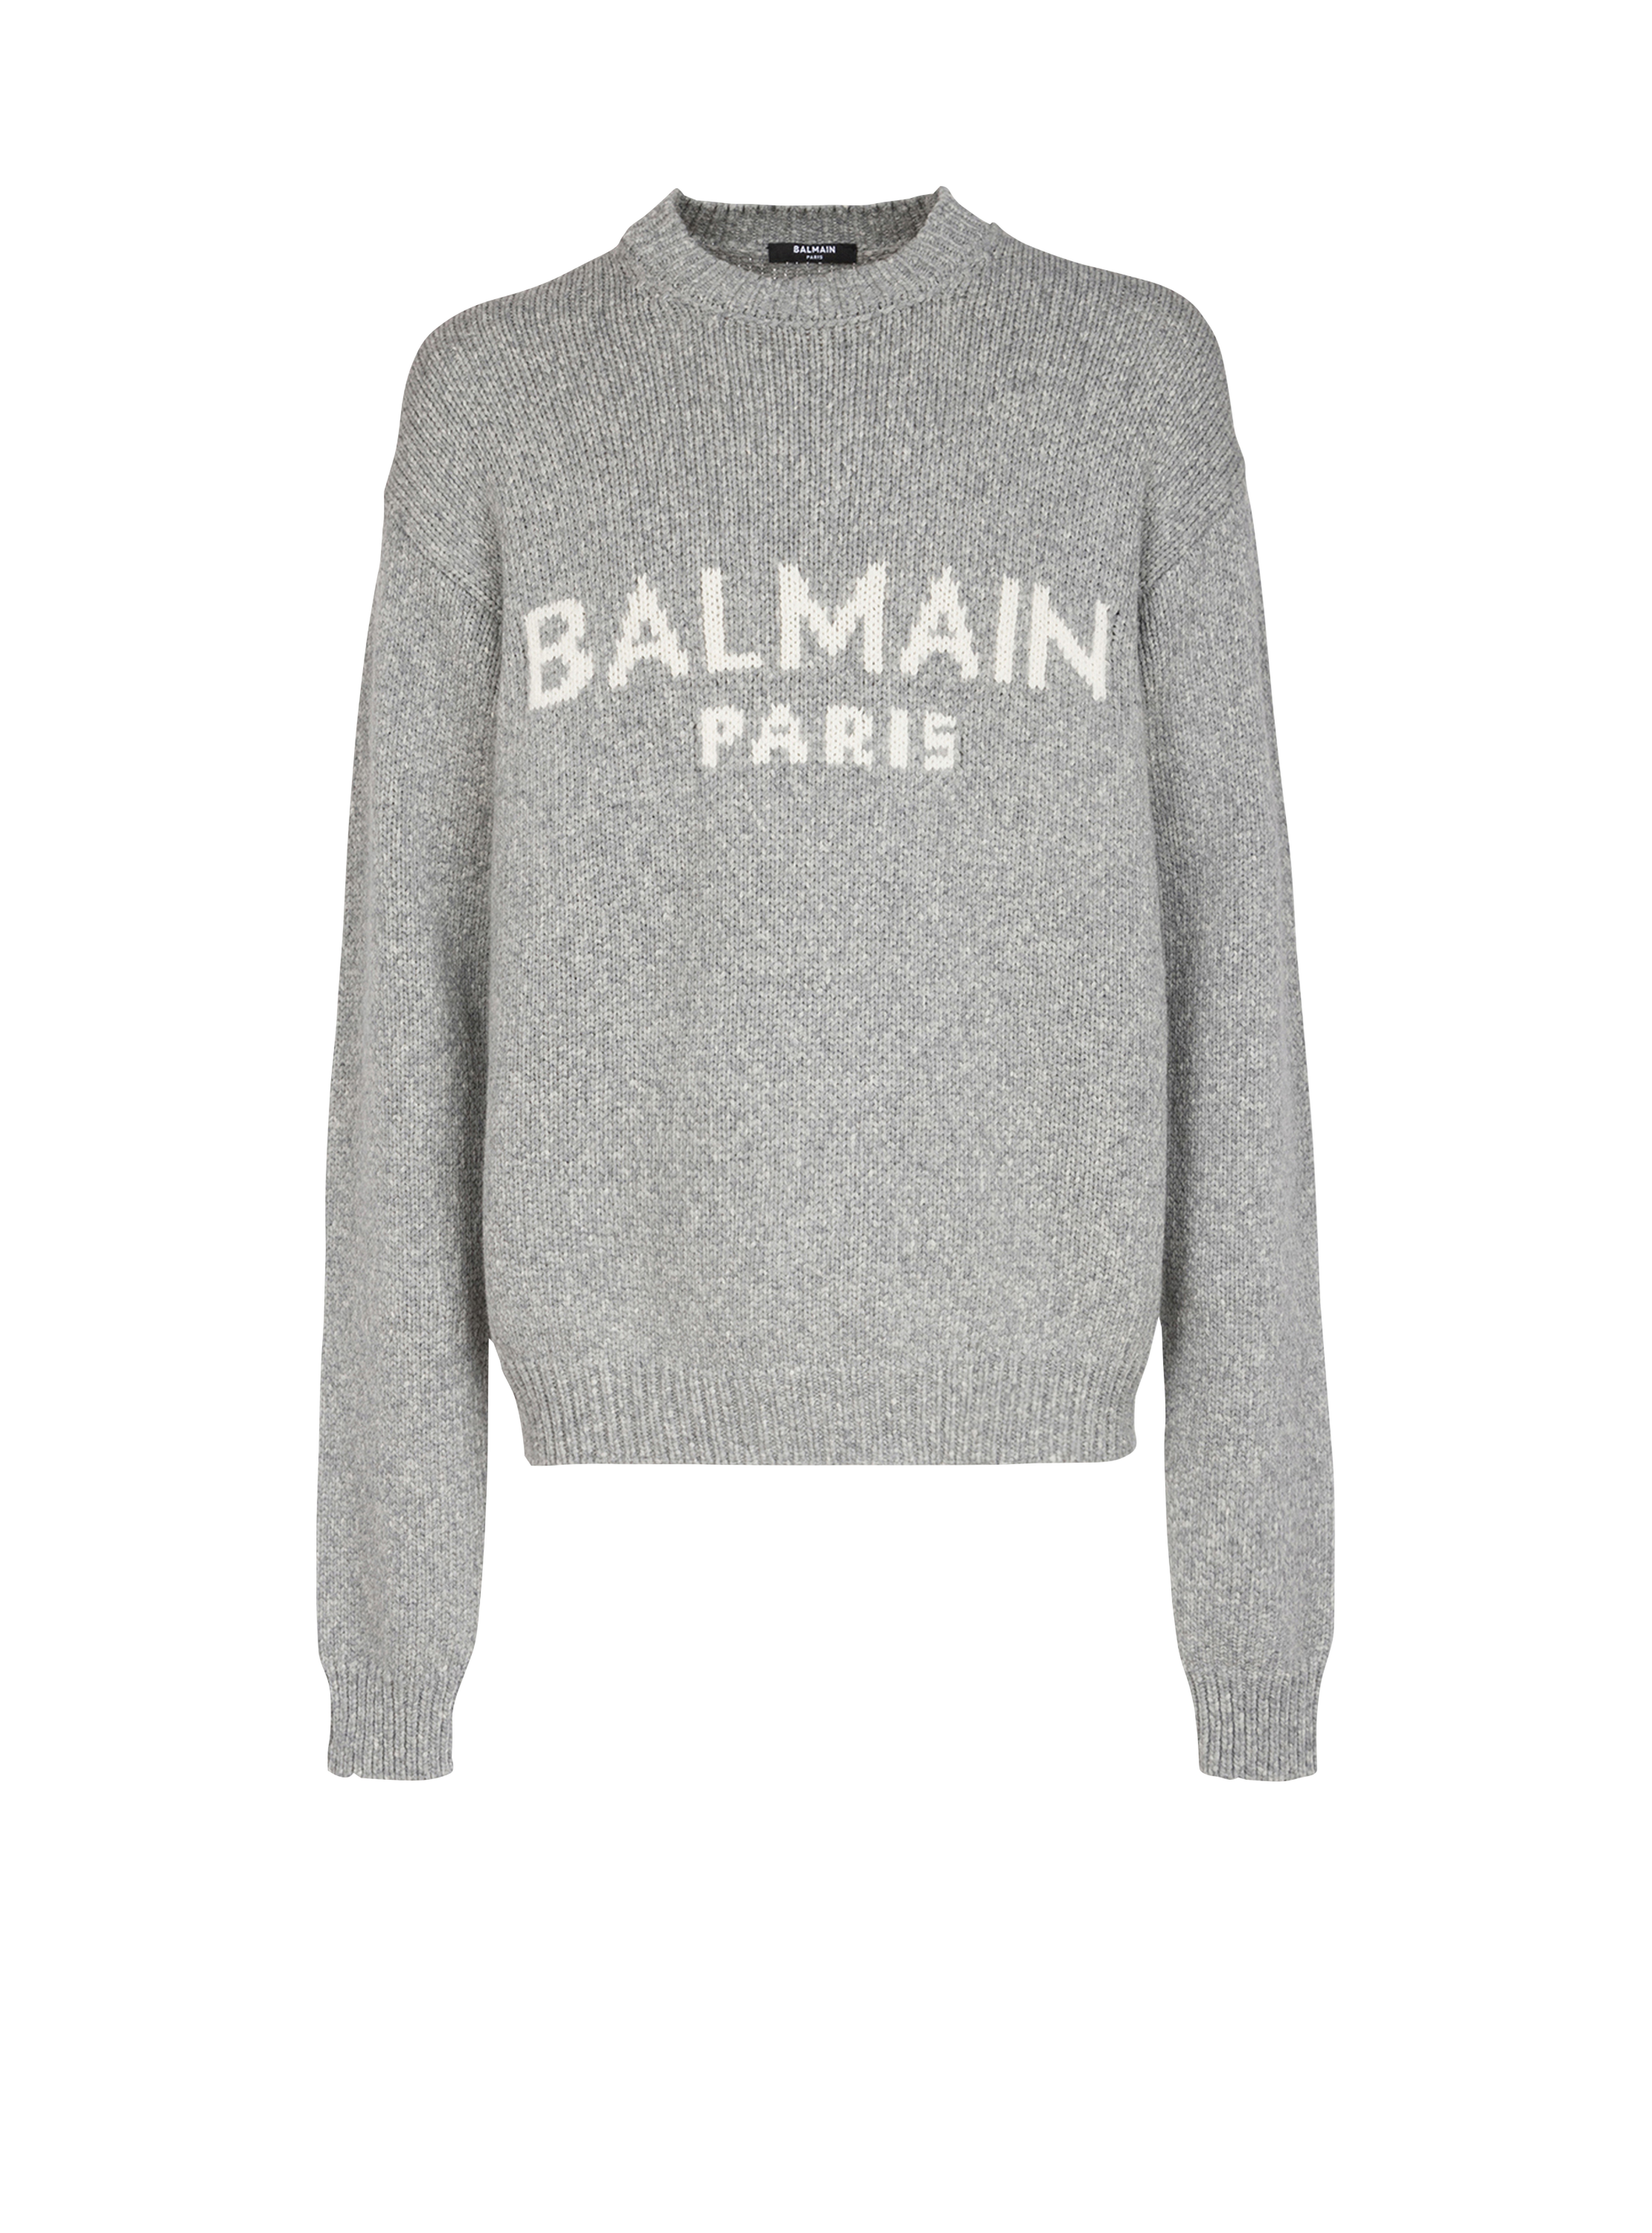 Jersey de lana con el logotipo de Balmain Paris, gris